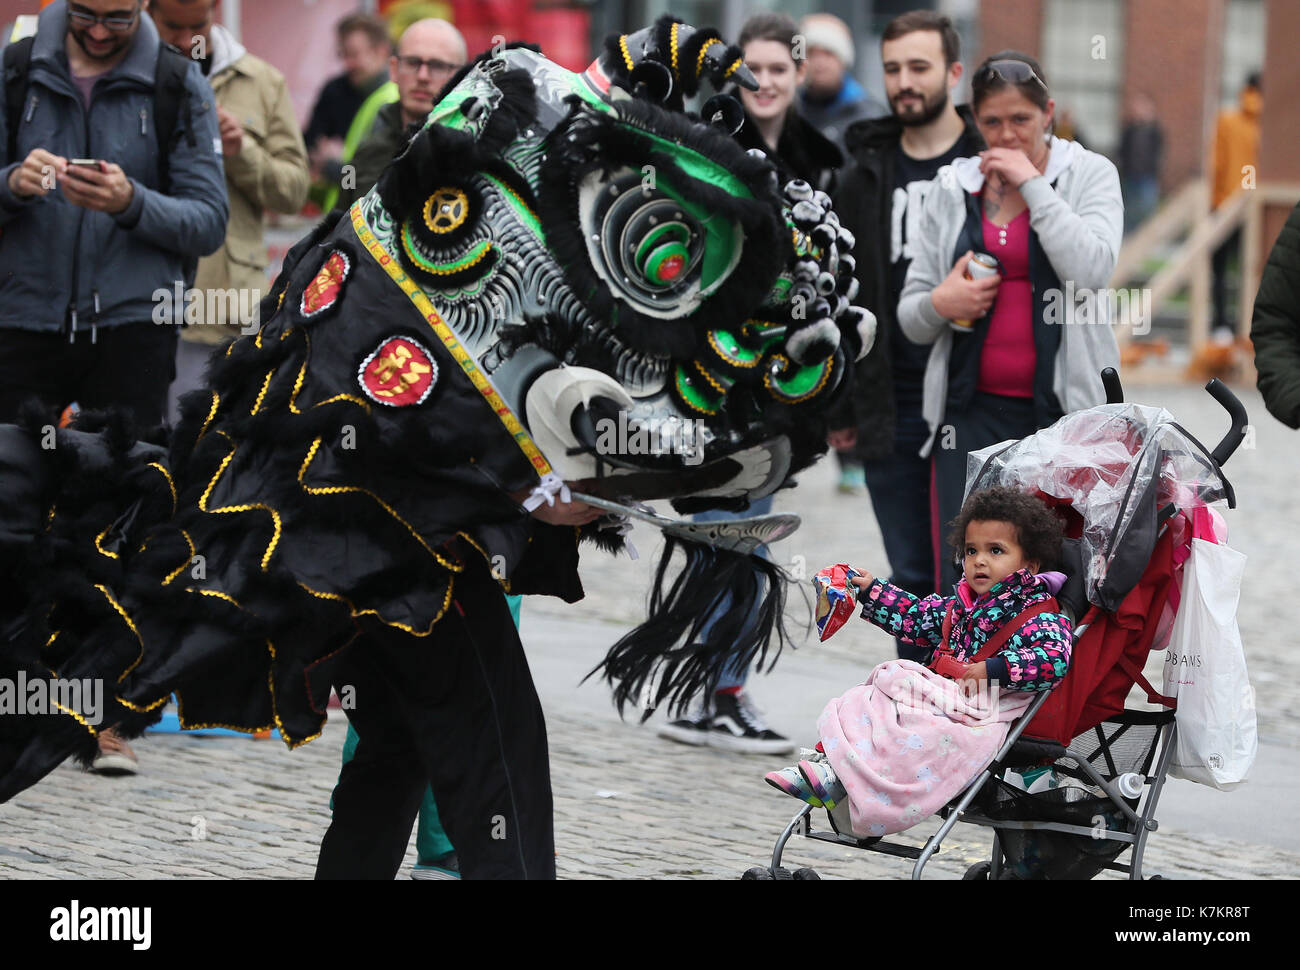 Ayana Kenny, 2 montres, un dragon chinois au cours de la performance bluefire street fest à Smithfield, Dublin. Banque D'Images